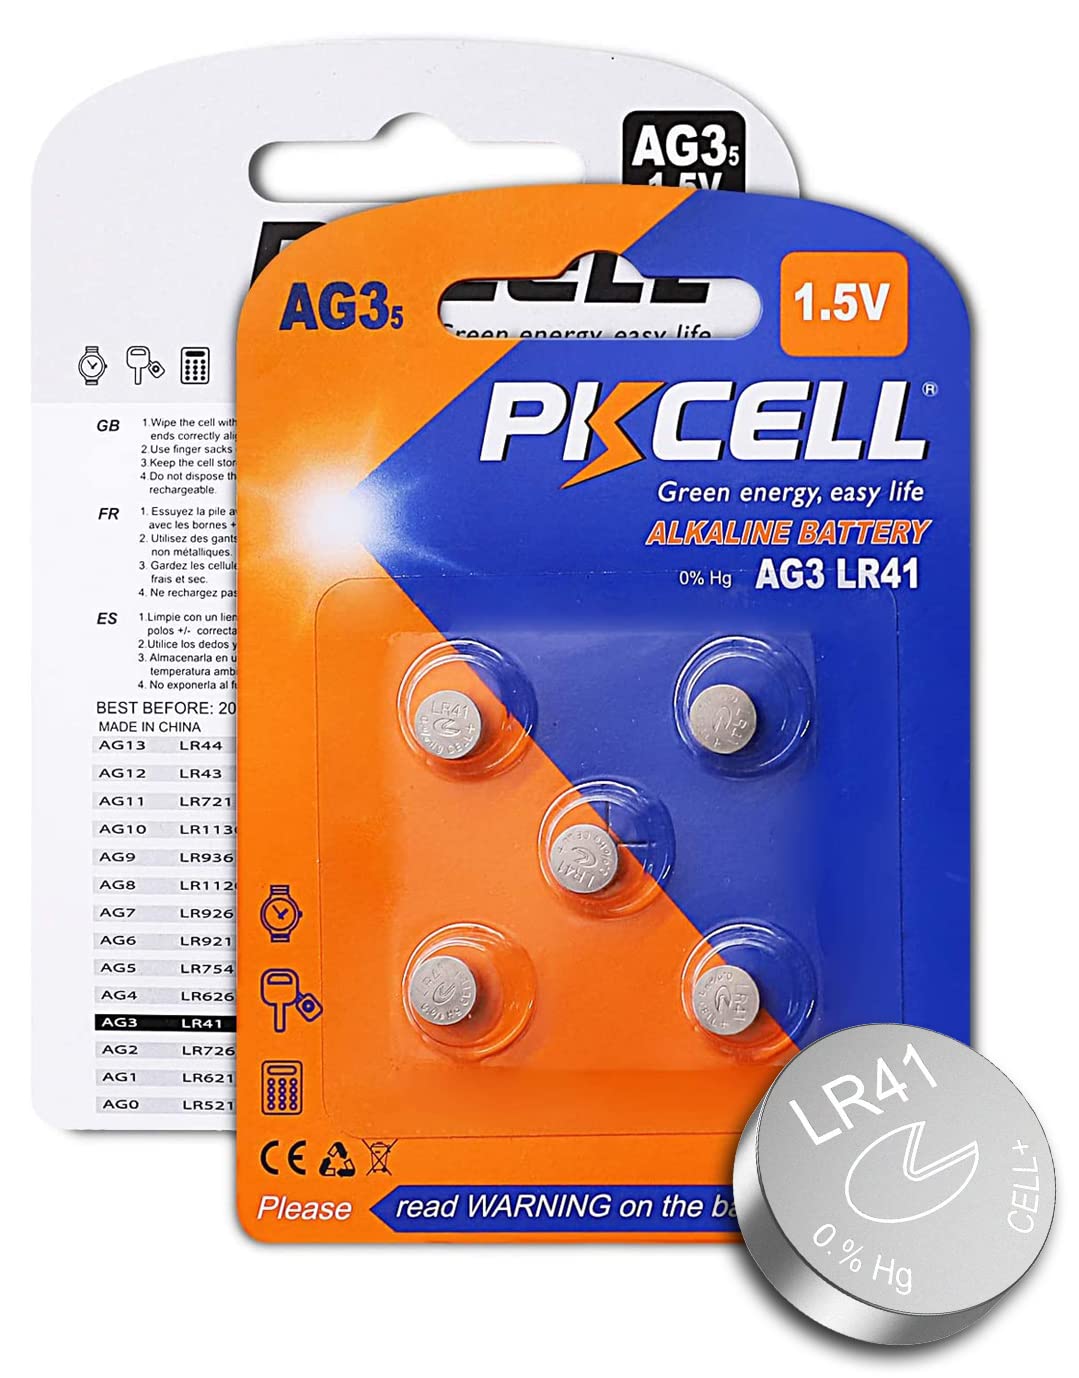 1 Card: 10pcs LR41 / AG3 1.5V Alkaline Button Cells